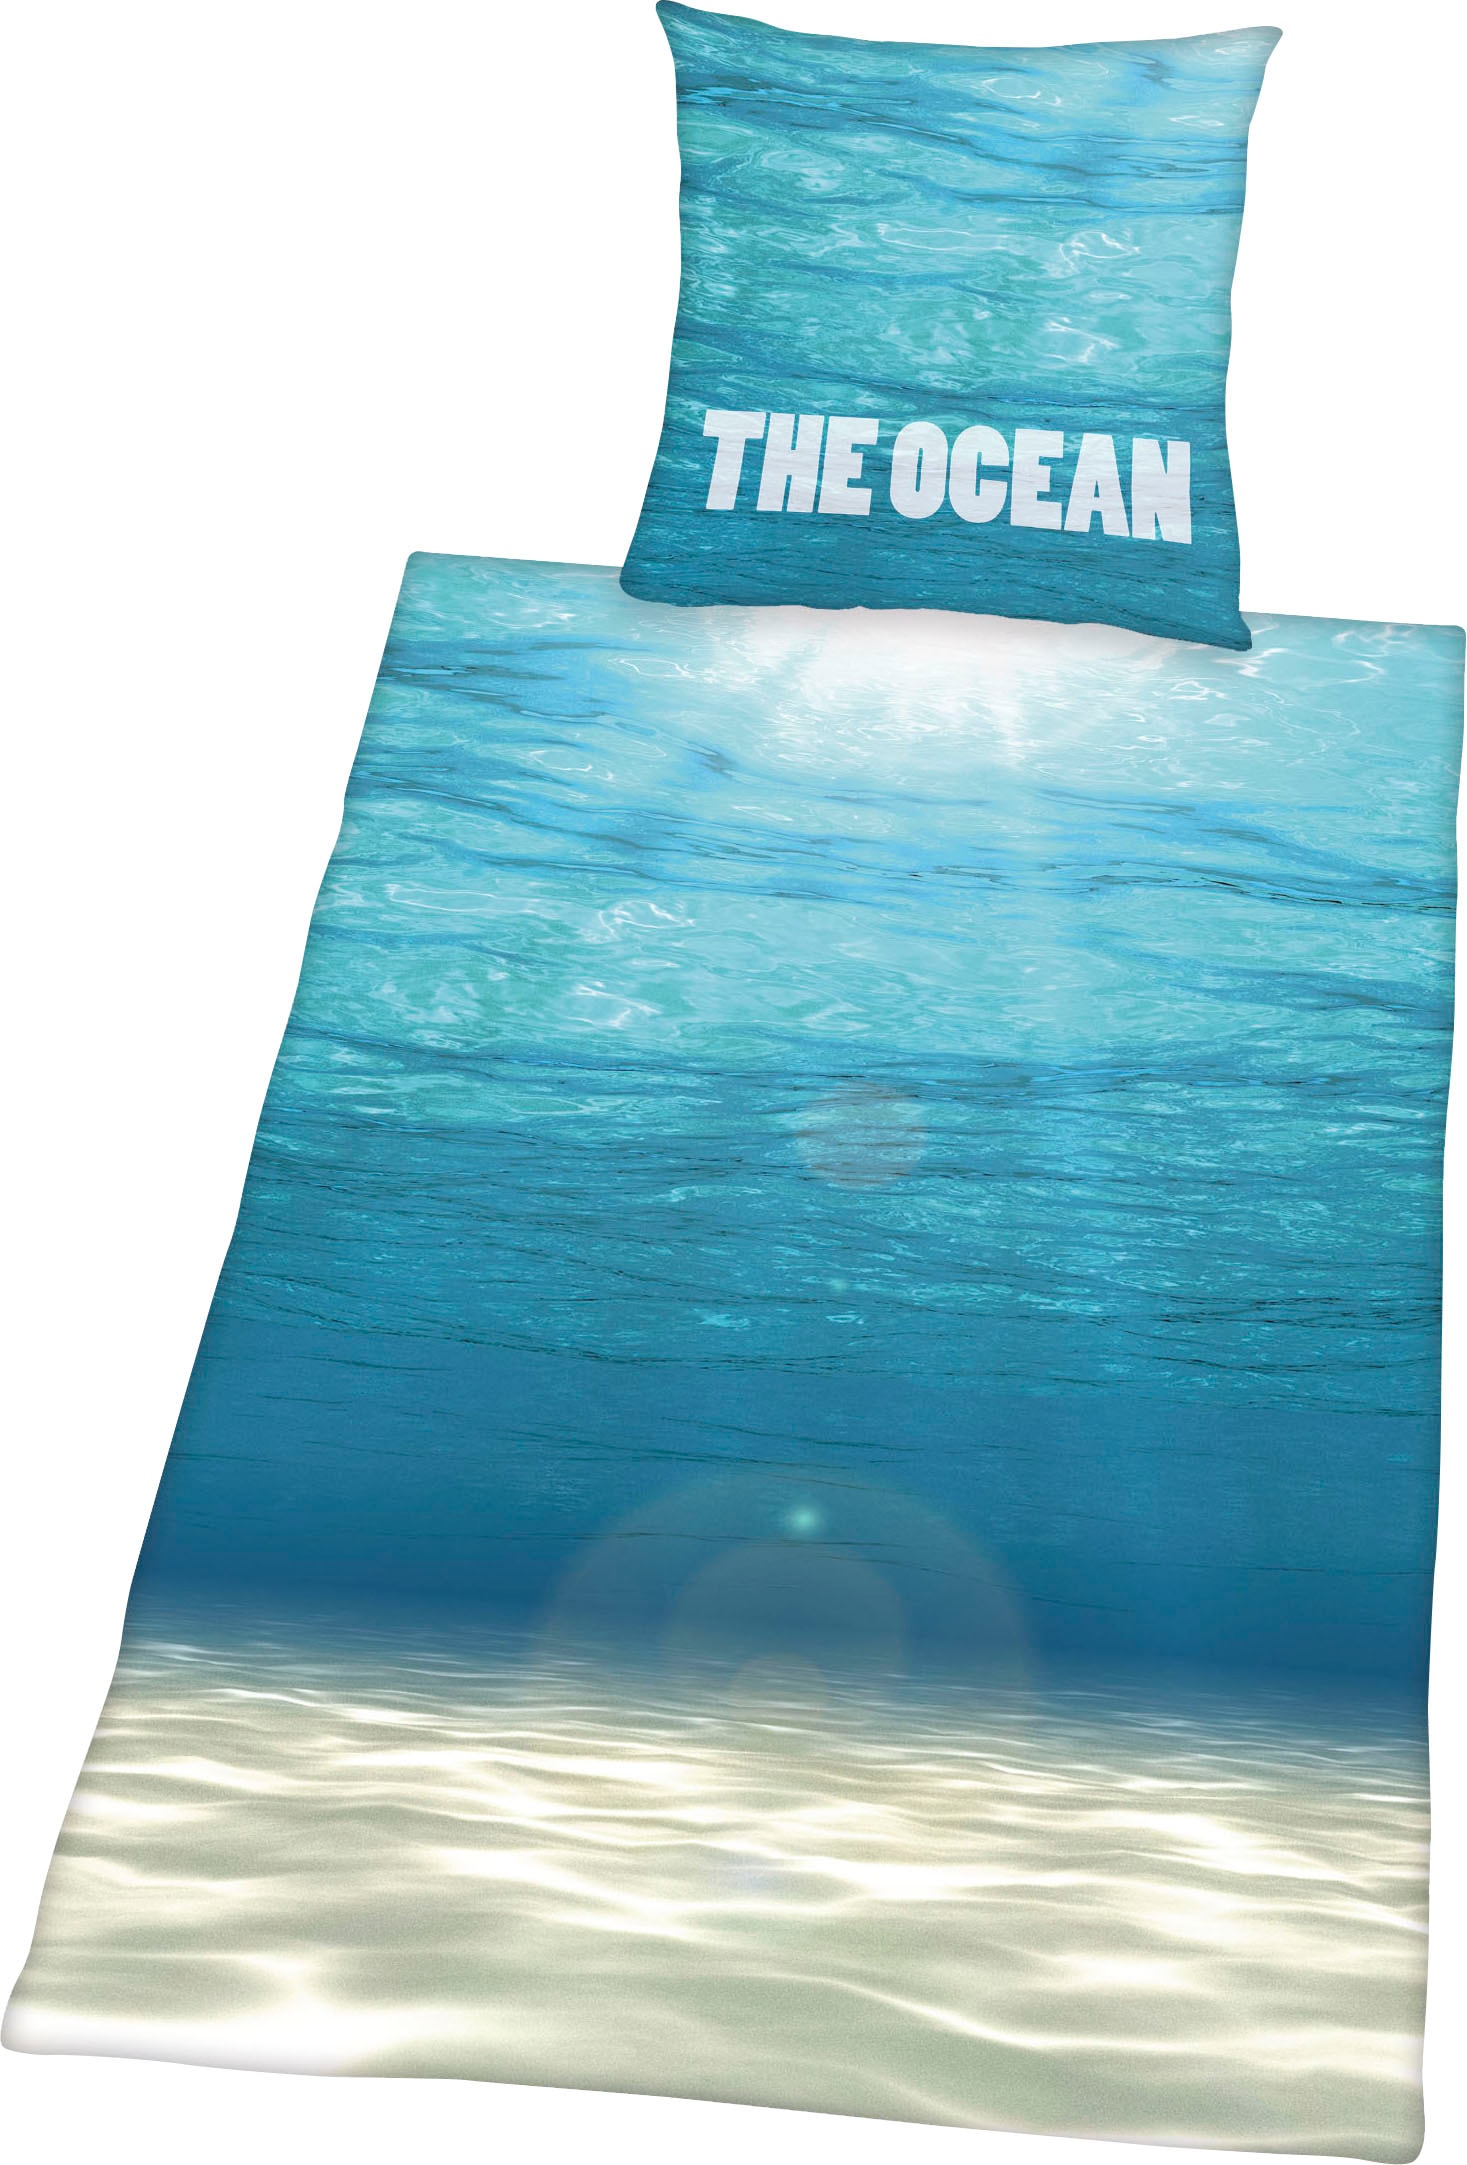 Bettwäsche »The Ocean«, mit tollem Ozean Motiv